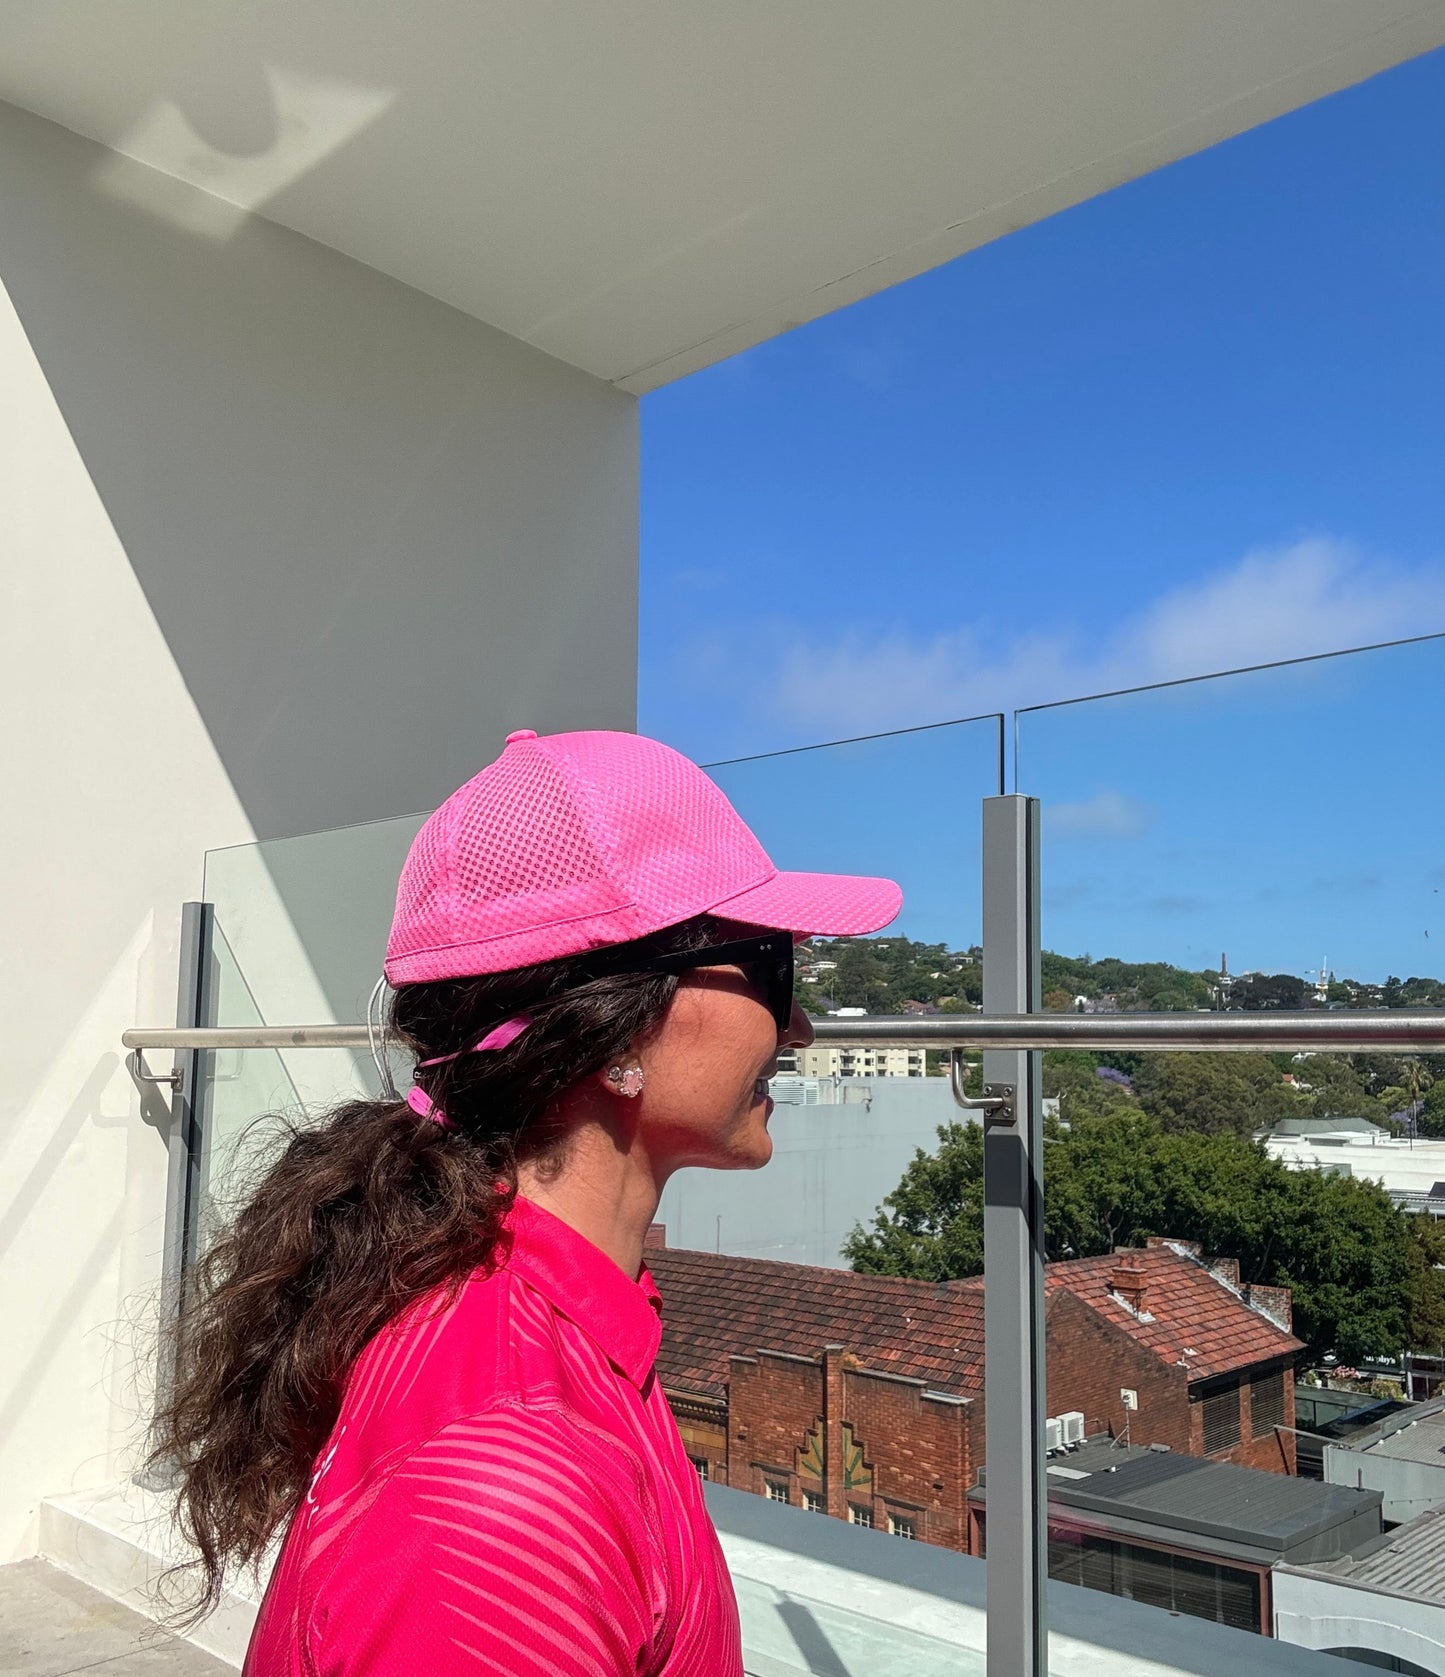 Deep crown feminine and functional secure sport proof pink sailing cap Femme Soleil by Rachel